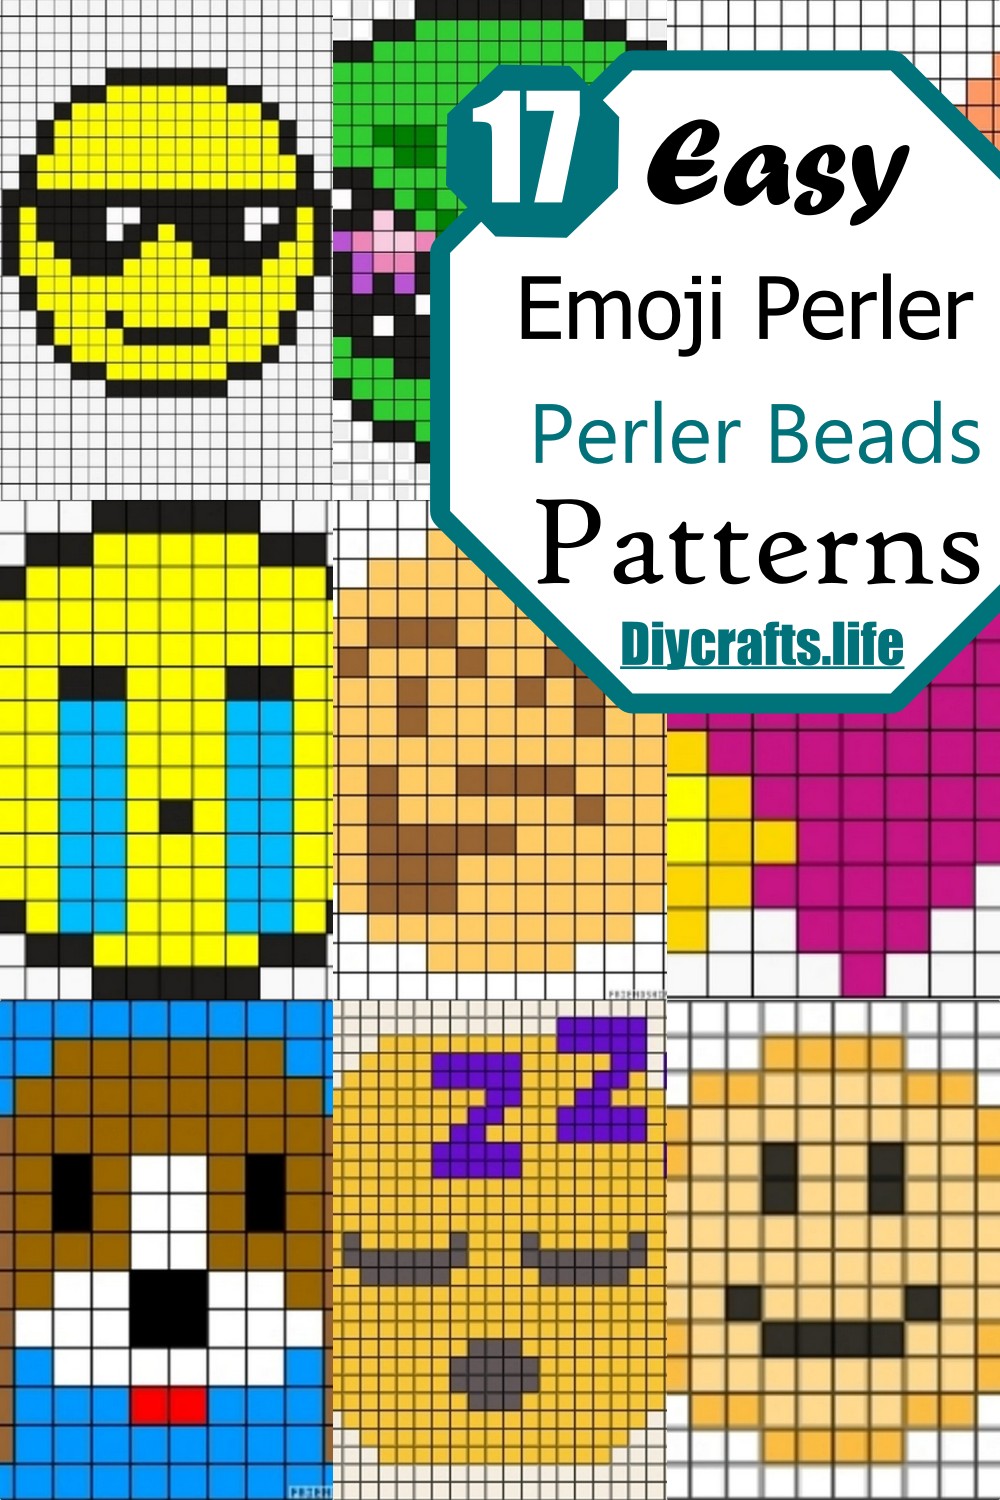 Easy Emoji Perler Bead Patterns